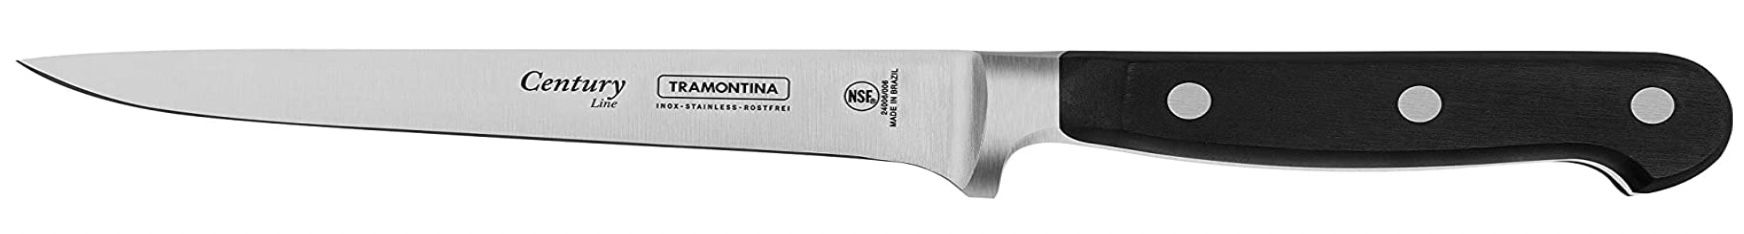 Tramontina CENTURY Messer (15cm) für 18,16€ (statt 40€)   Prime